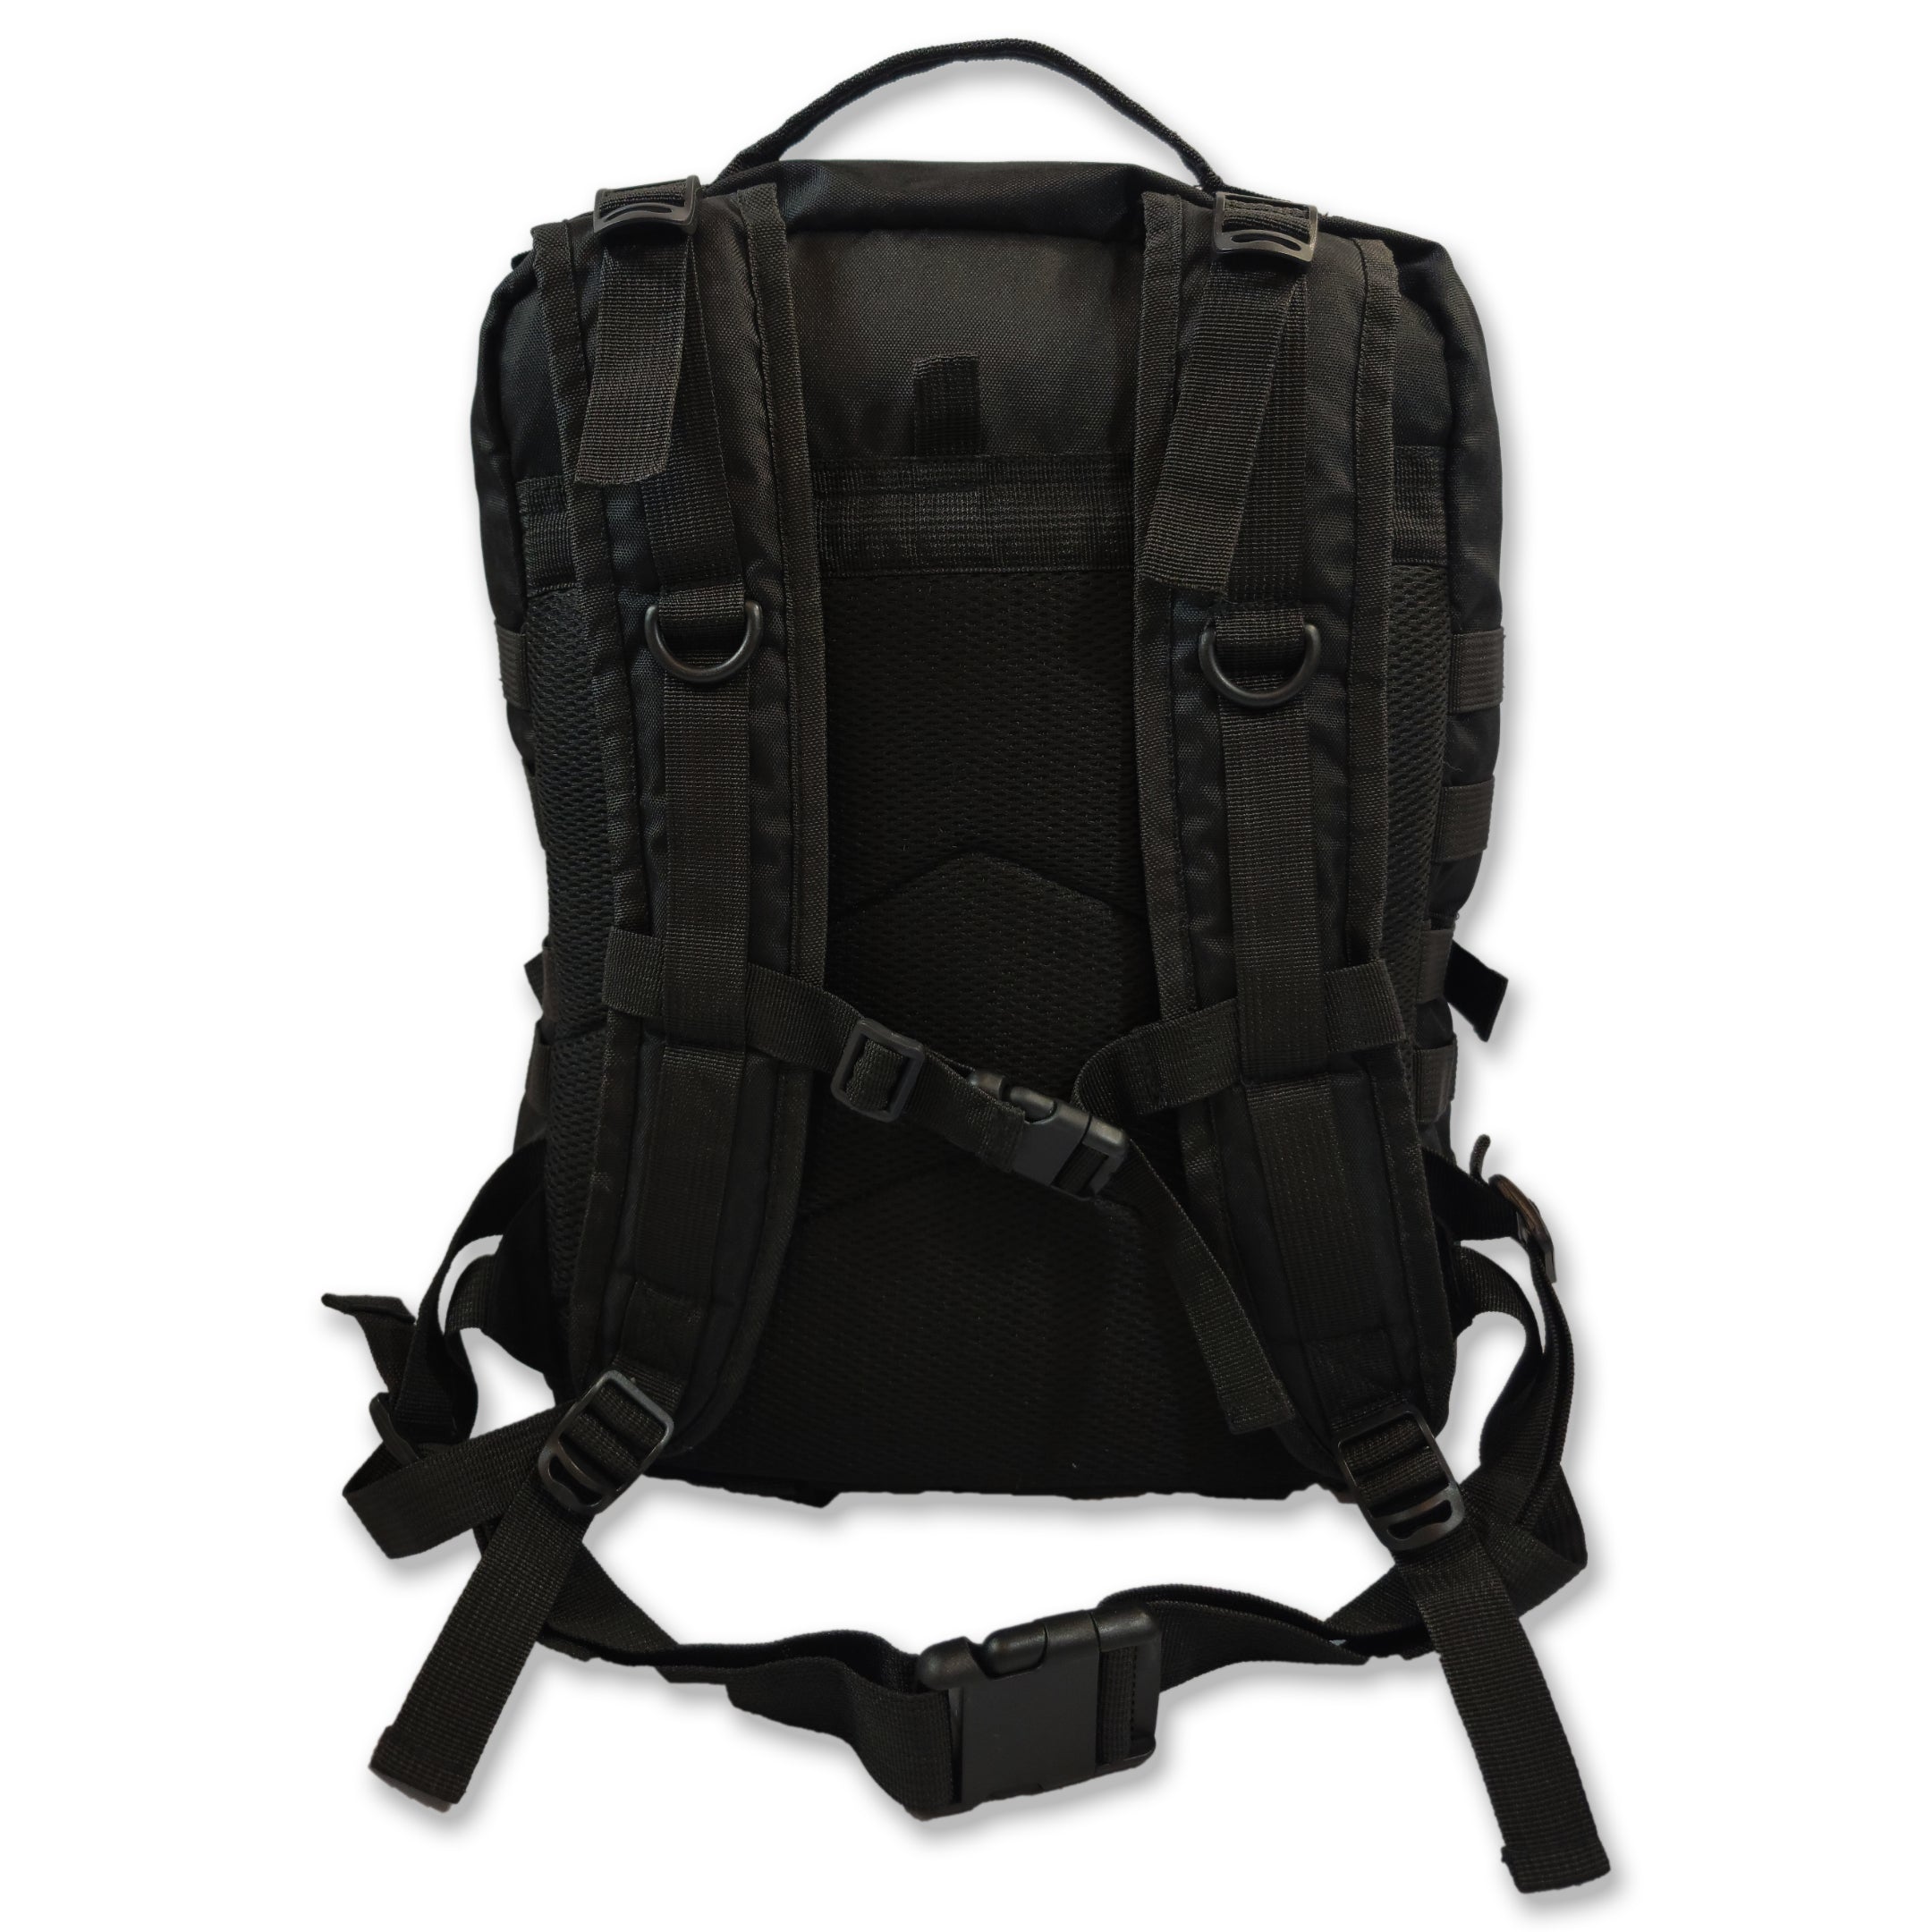 Zenko Fightwear Tactical Backpack